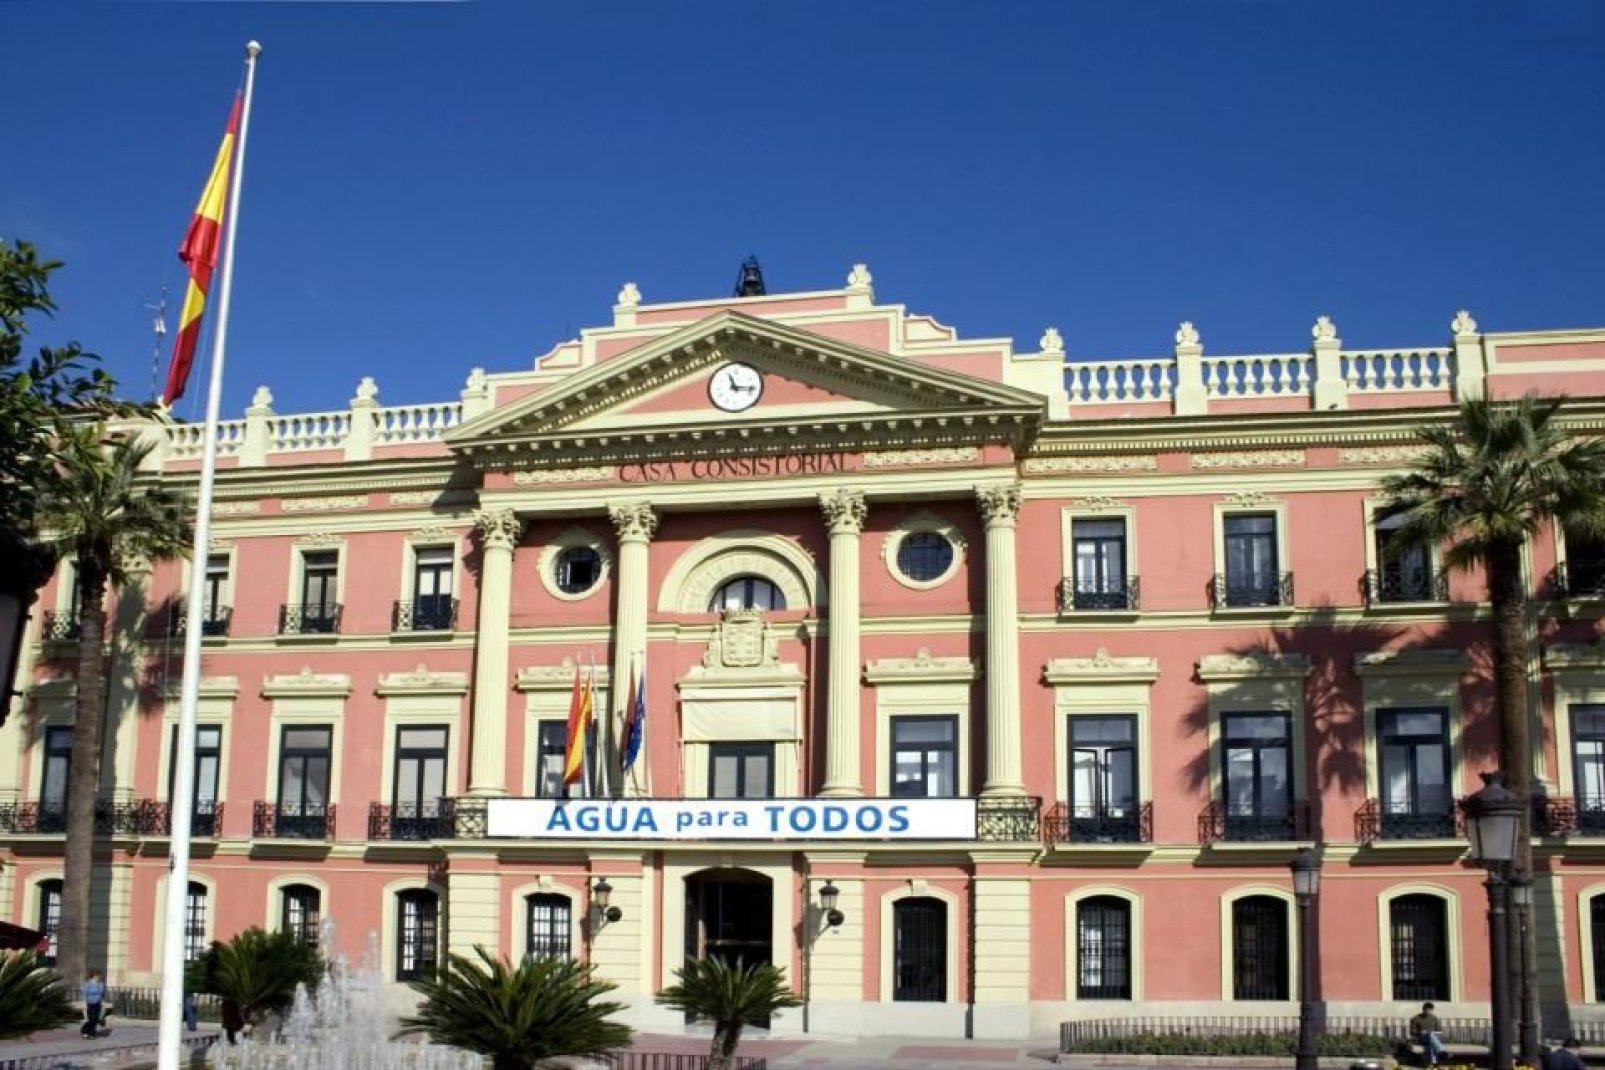 L'hôtel de ville se trouve dans le parc de la ville, la Glorieta.